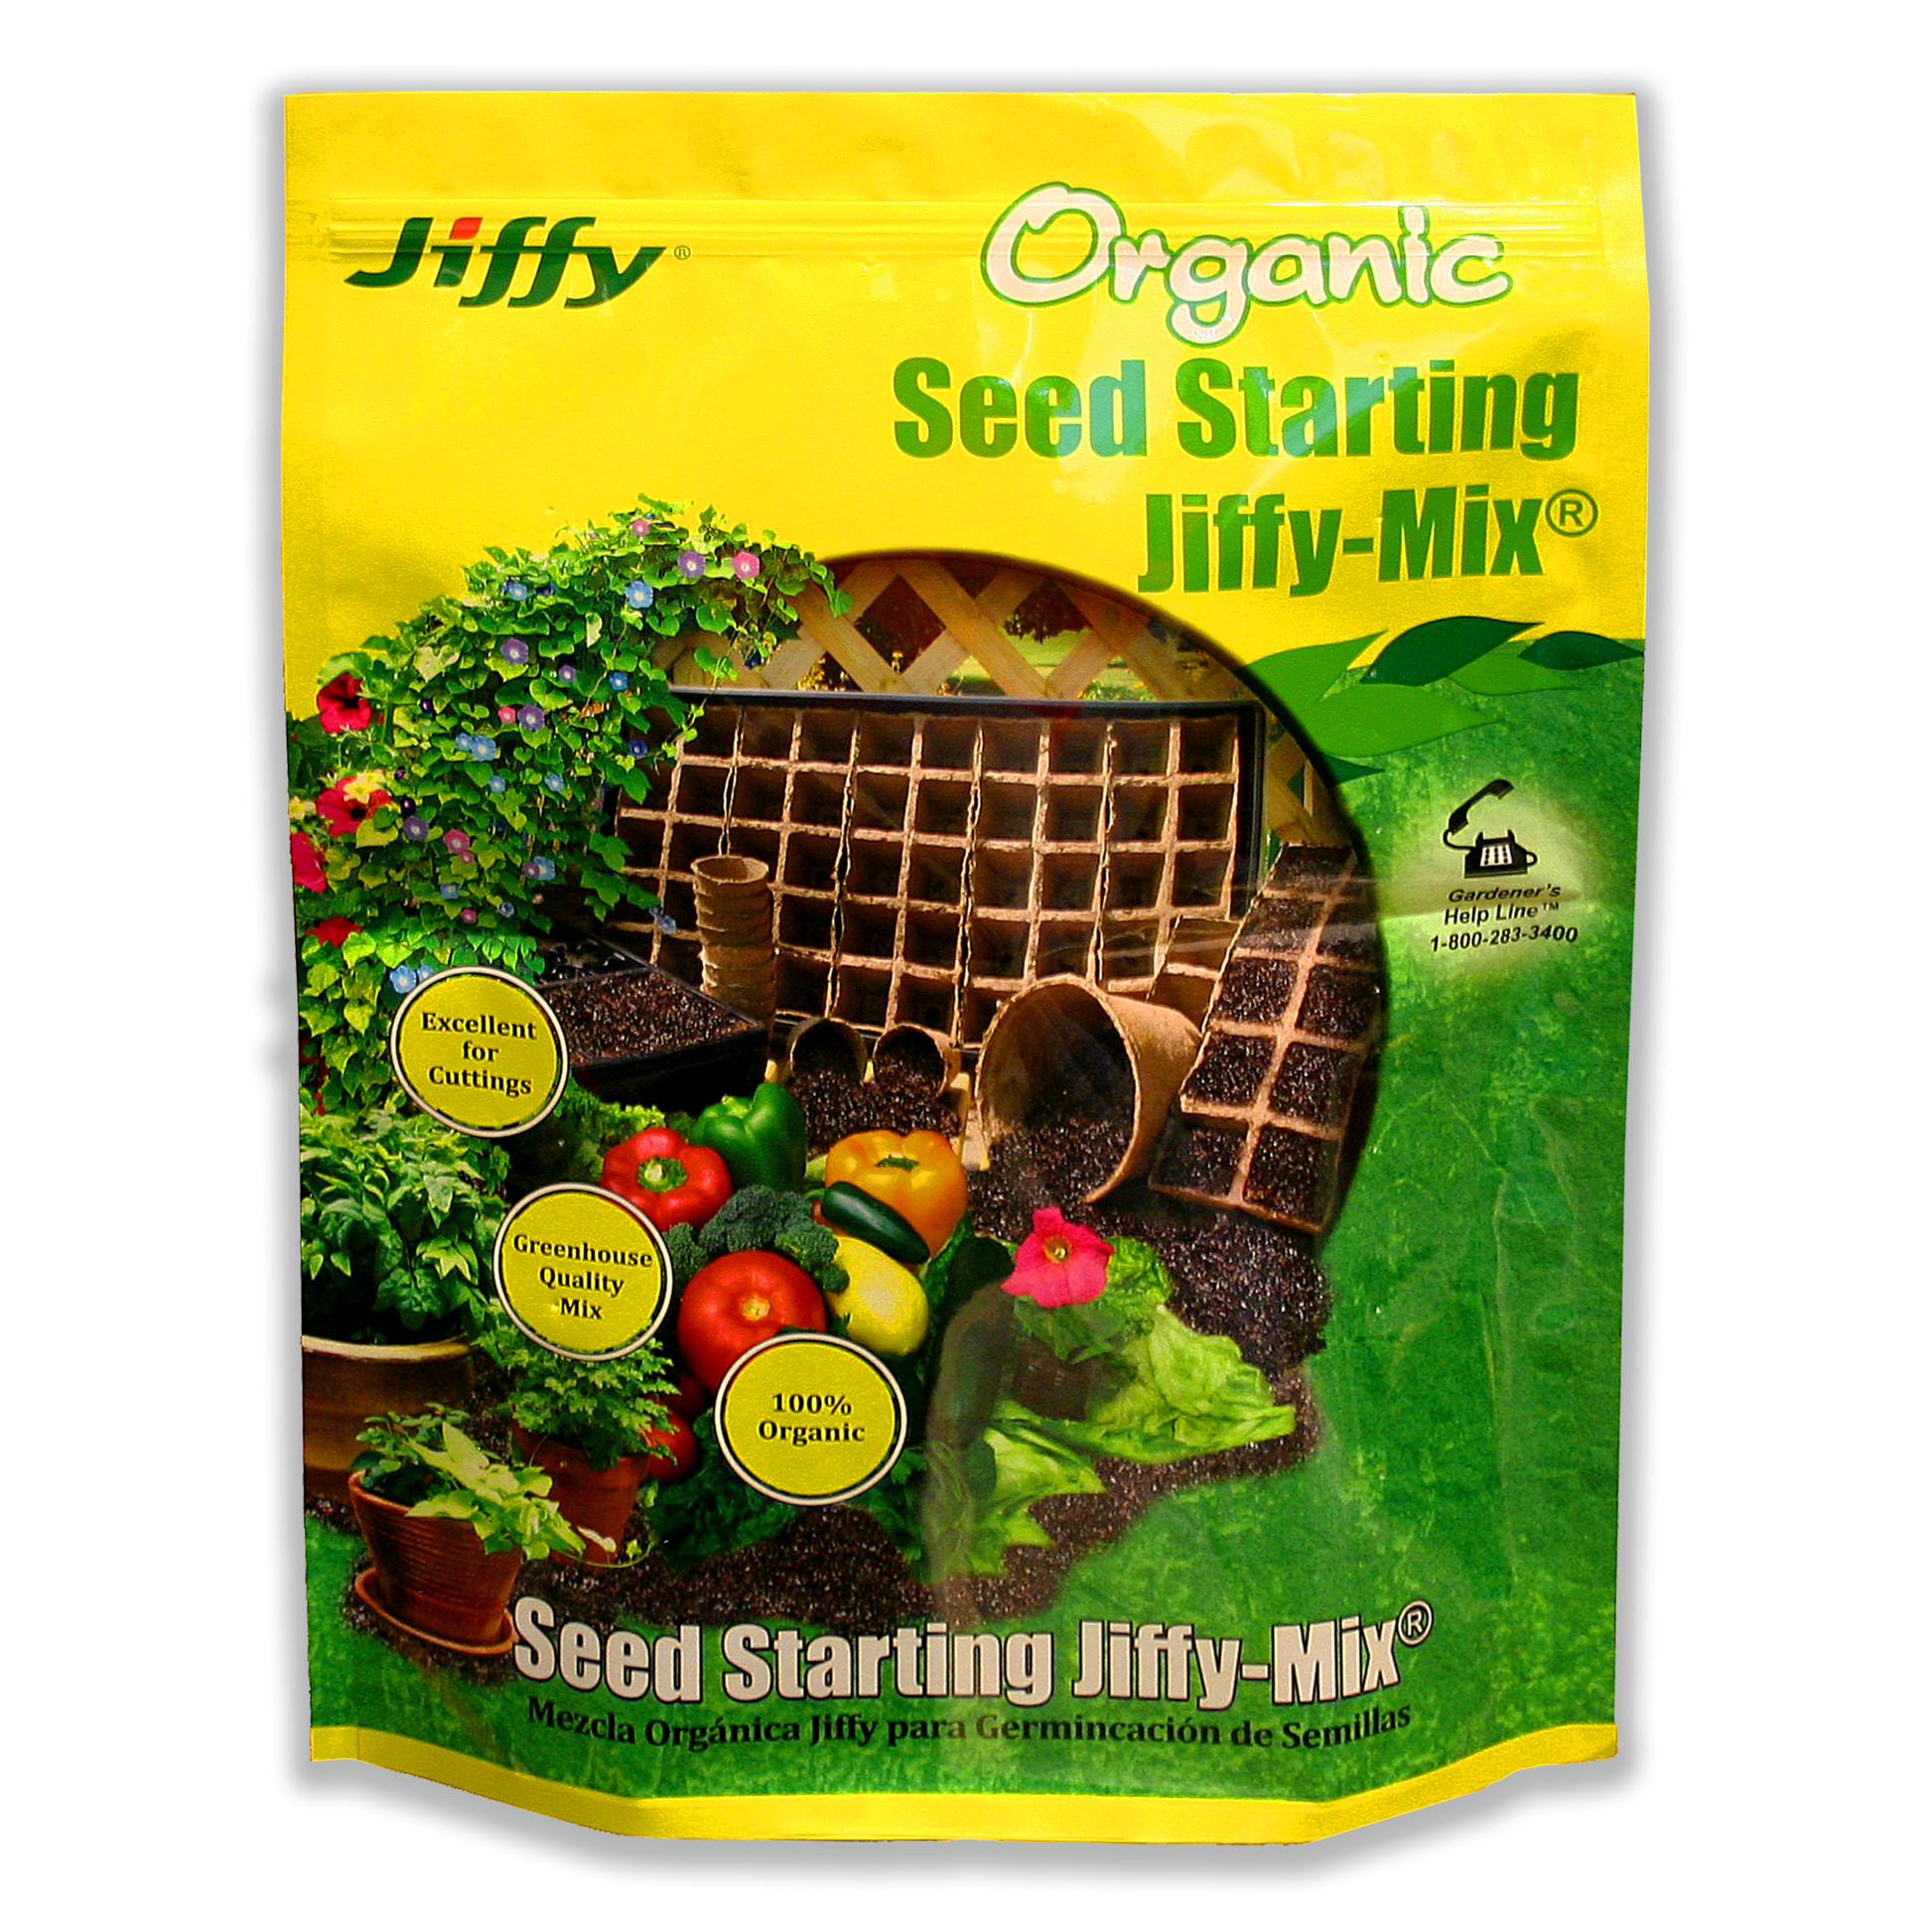 https://ferrymorse.com/cdn/shop/products/Organic_Seed_Starting_Jiffy_Soil_Mix_G310.png?v=1603197364&width=1946